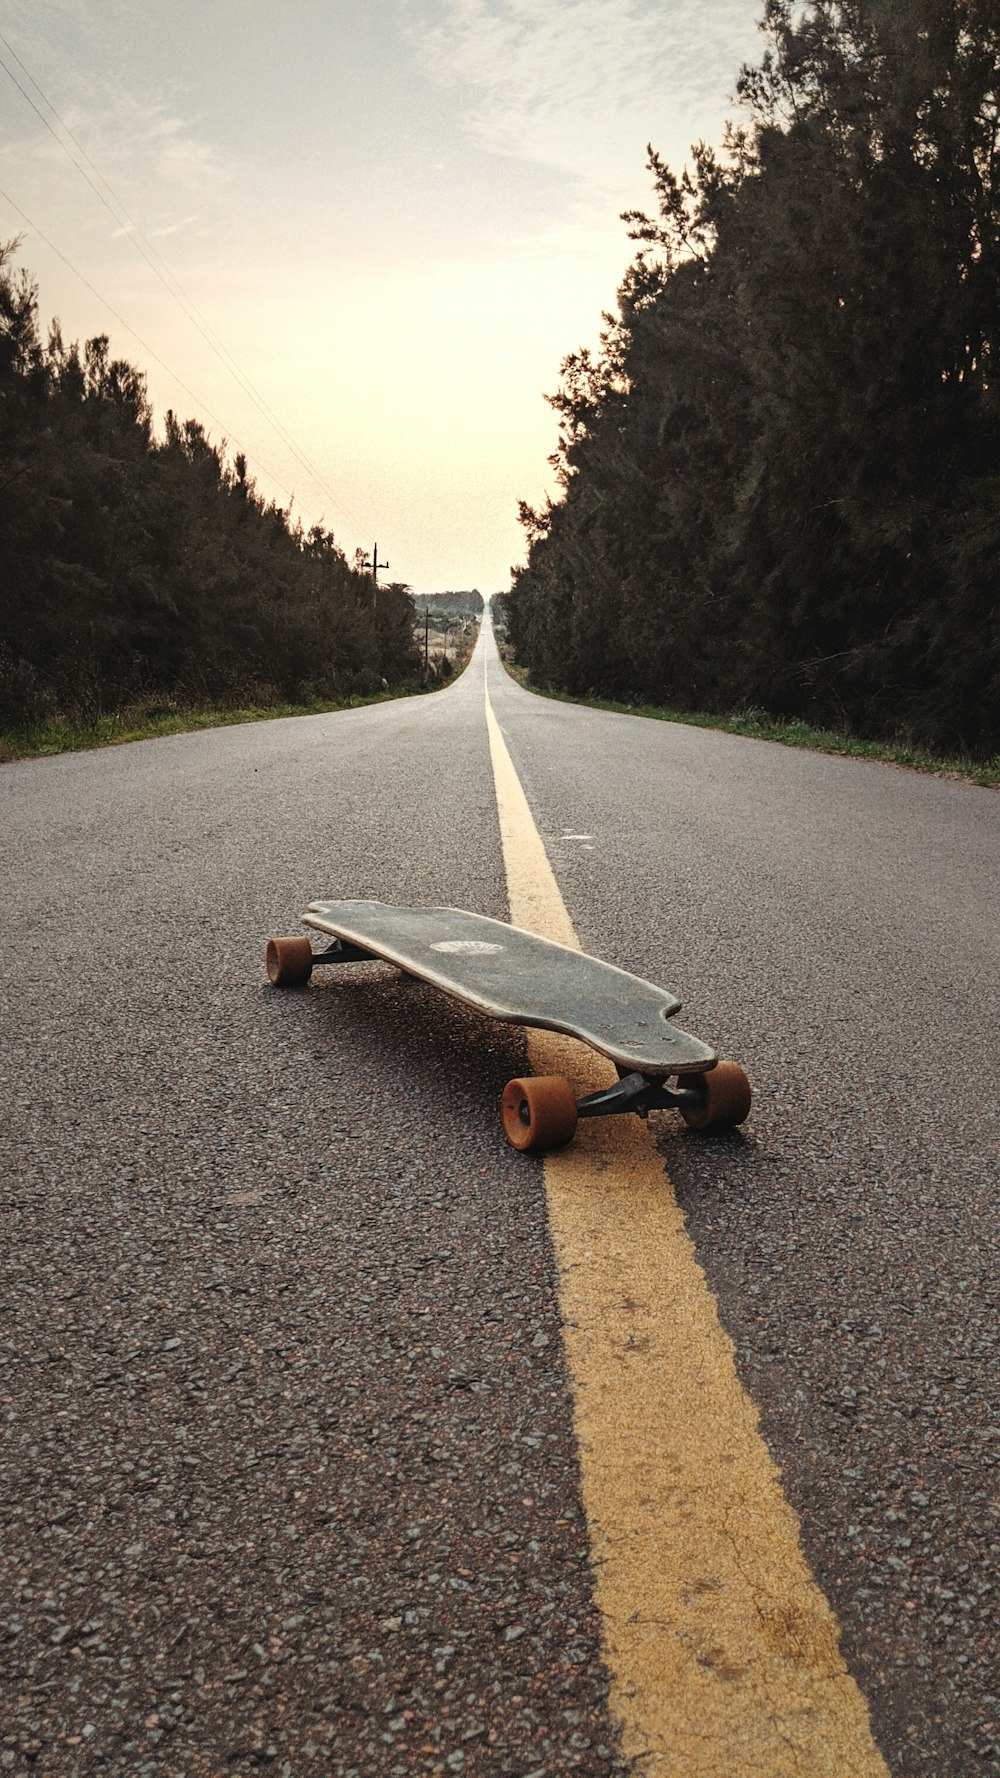 orange and black skateboard on gray asphalt road during daytime